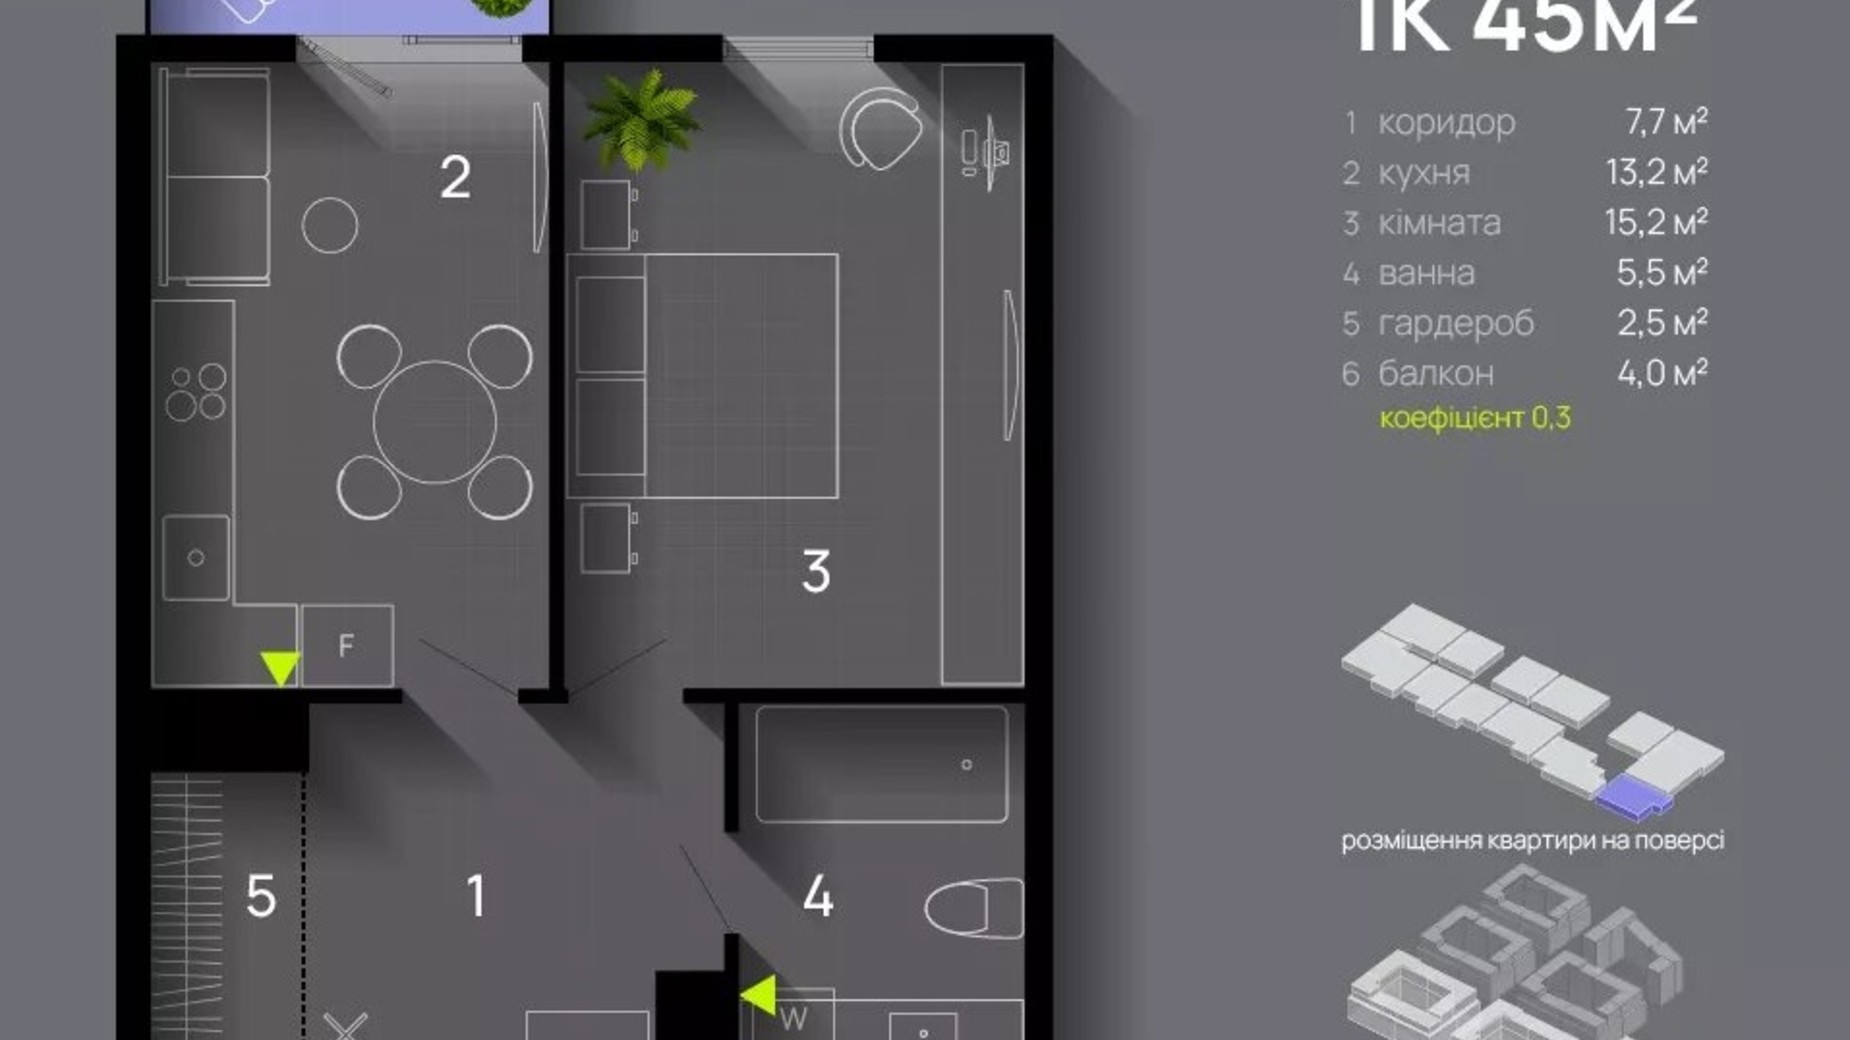 Планировка 1-комнатной квартиры в ЖК Manhattan Up 45 м², фото 657700